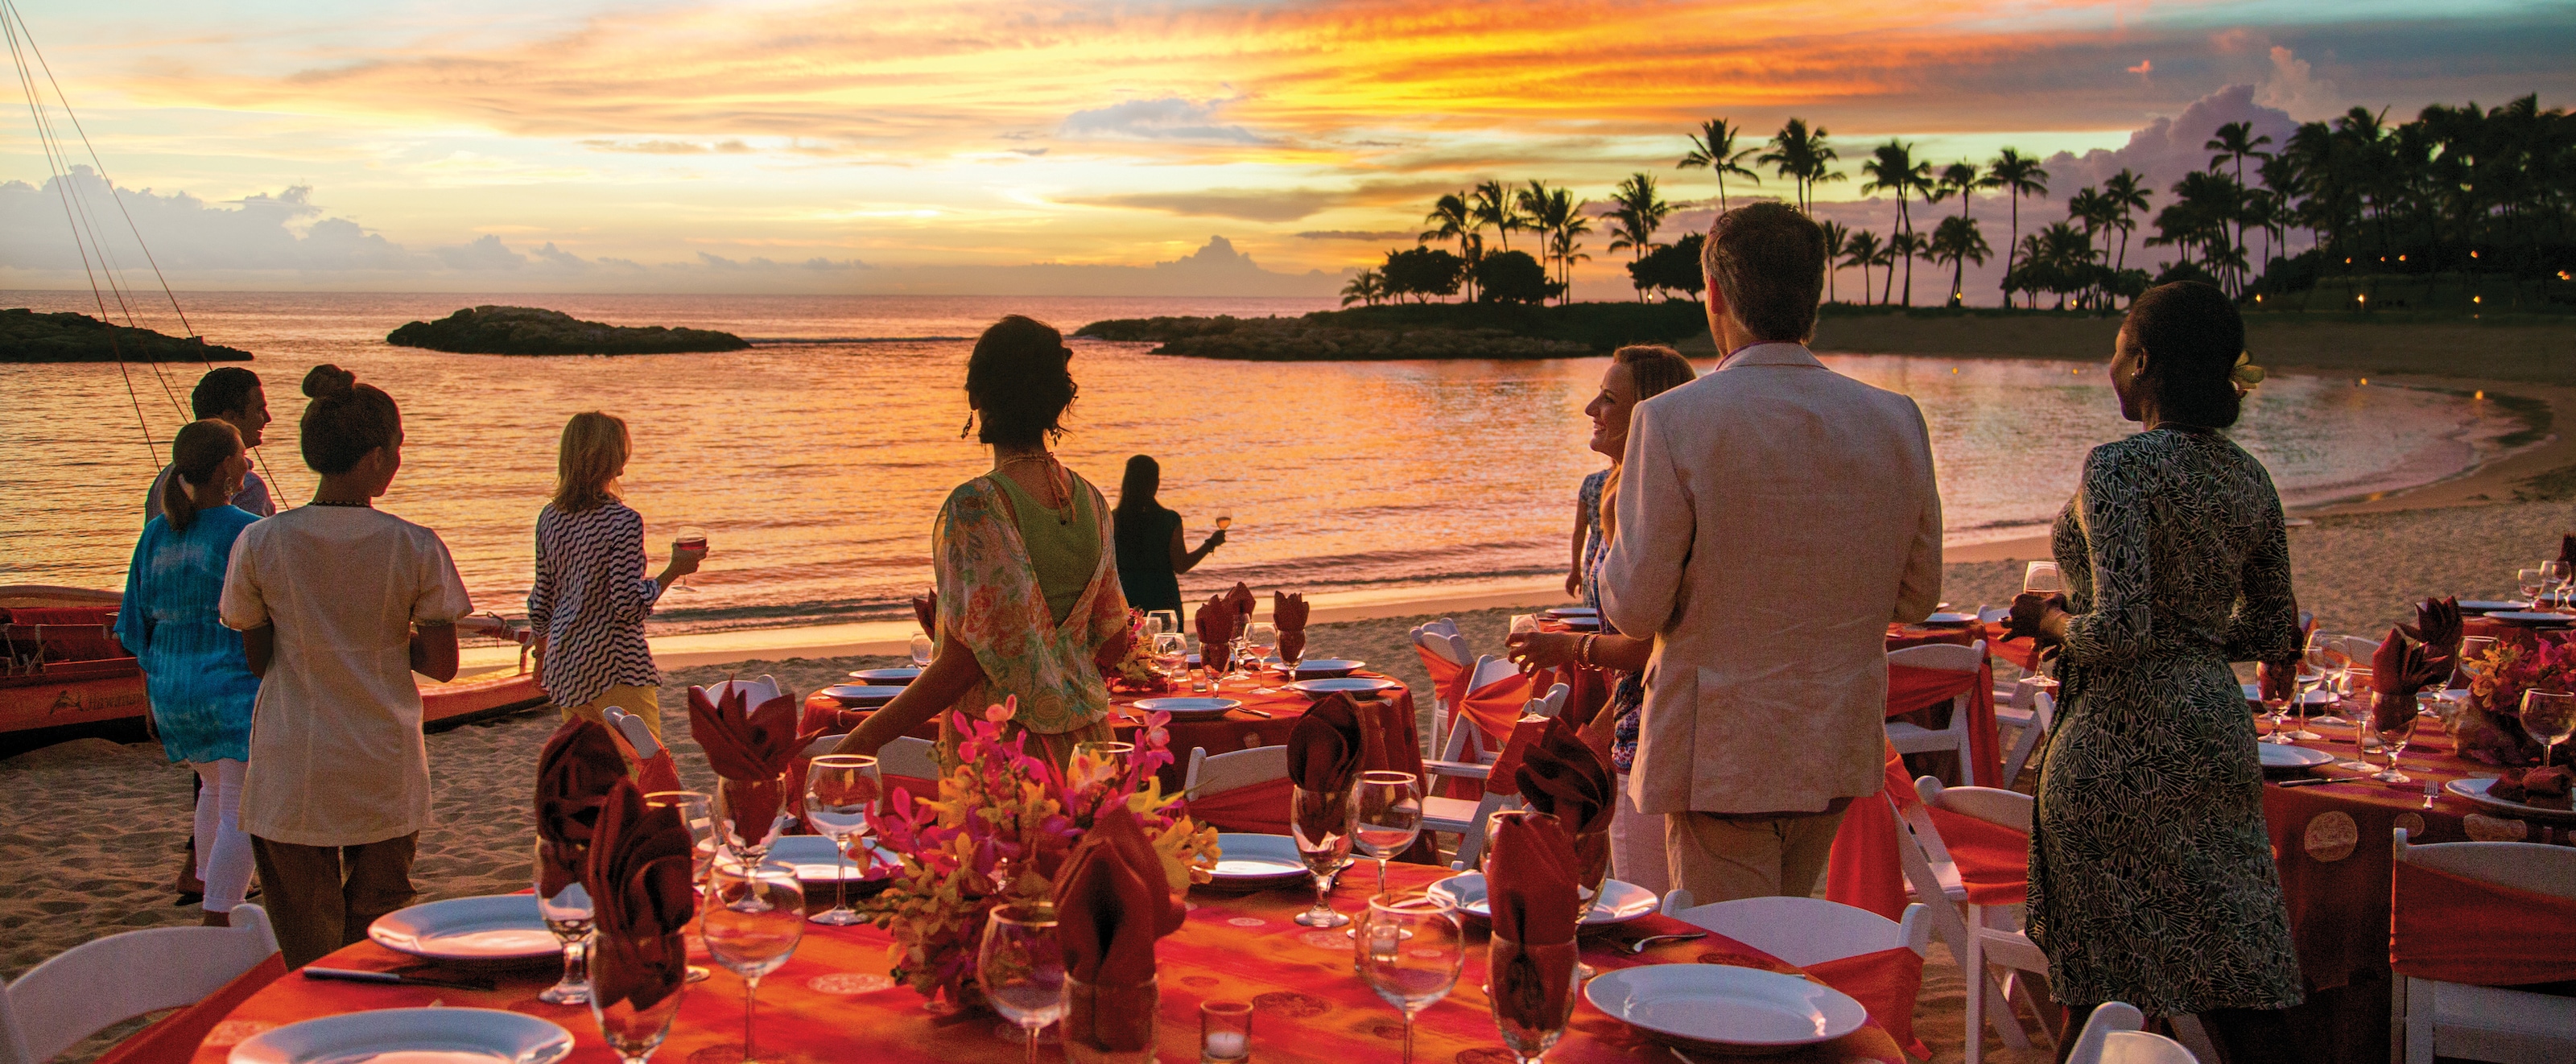 ラグーンにかかる色鮮やかな夕焼けに見とれて立ち止まる海辺のパーティ参加者